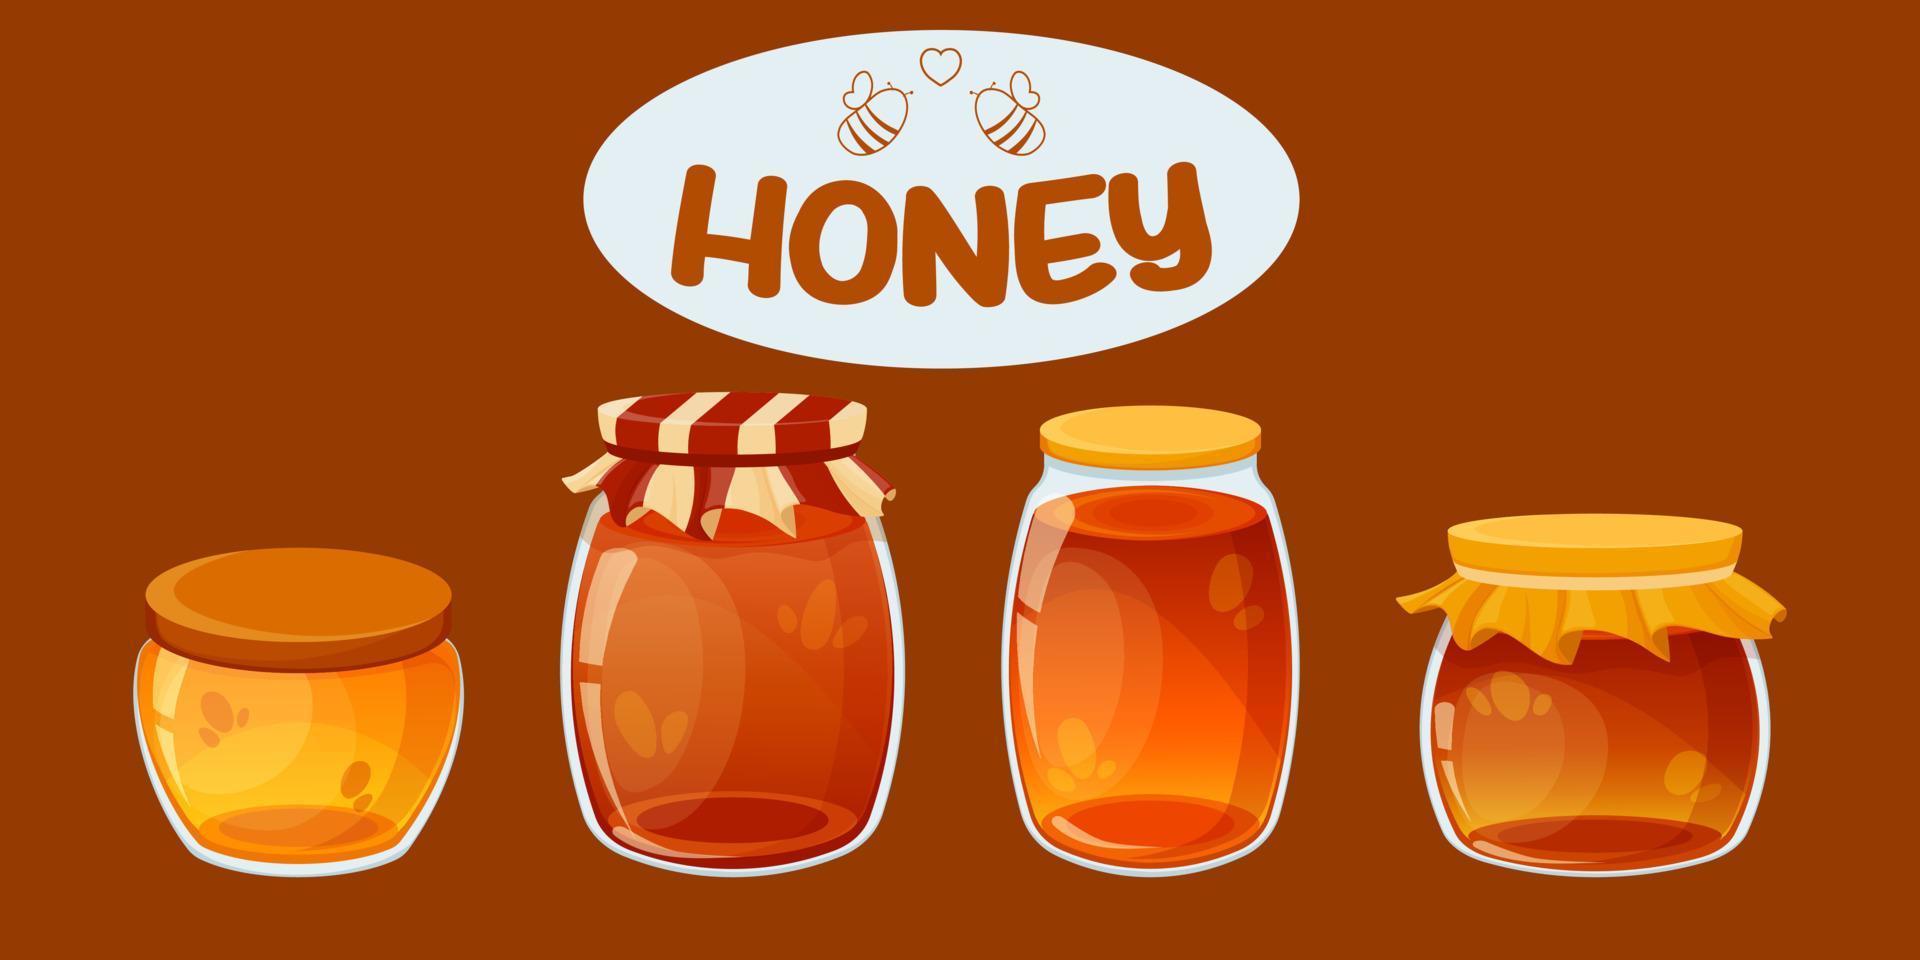 potten, kannen, potten met honing. honing van verschillende soorten. donkere en lichte honing in potten. pot met deksel met ruches. logo voor honingverpakking: vector